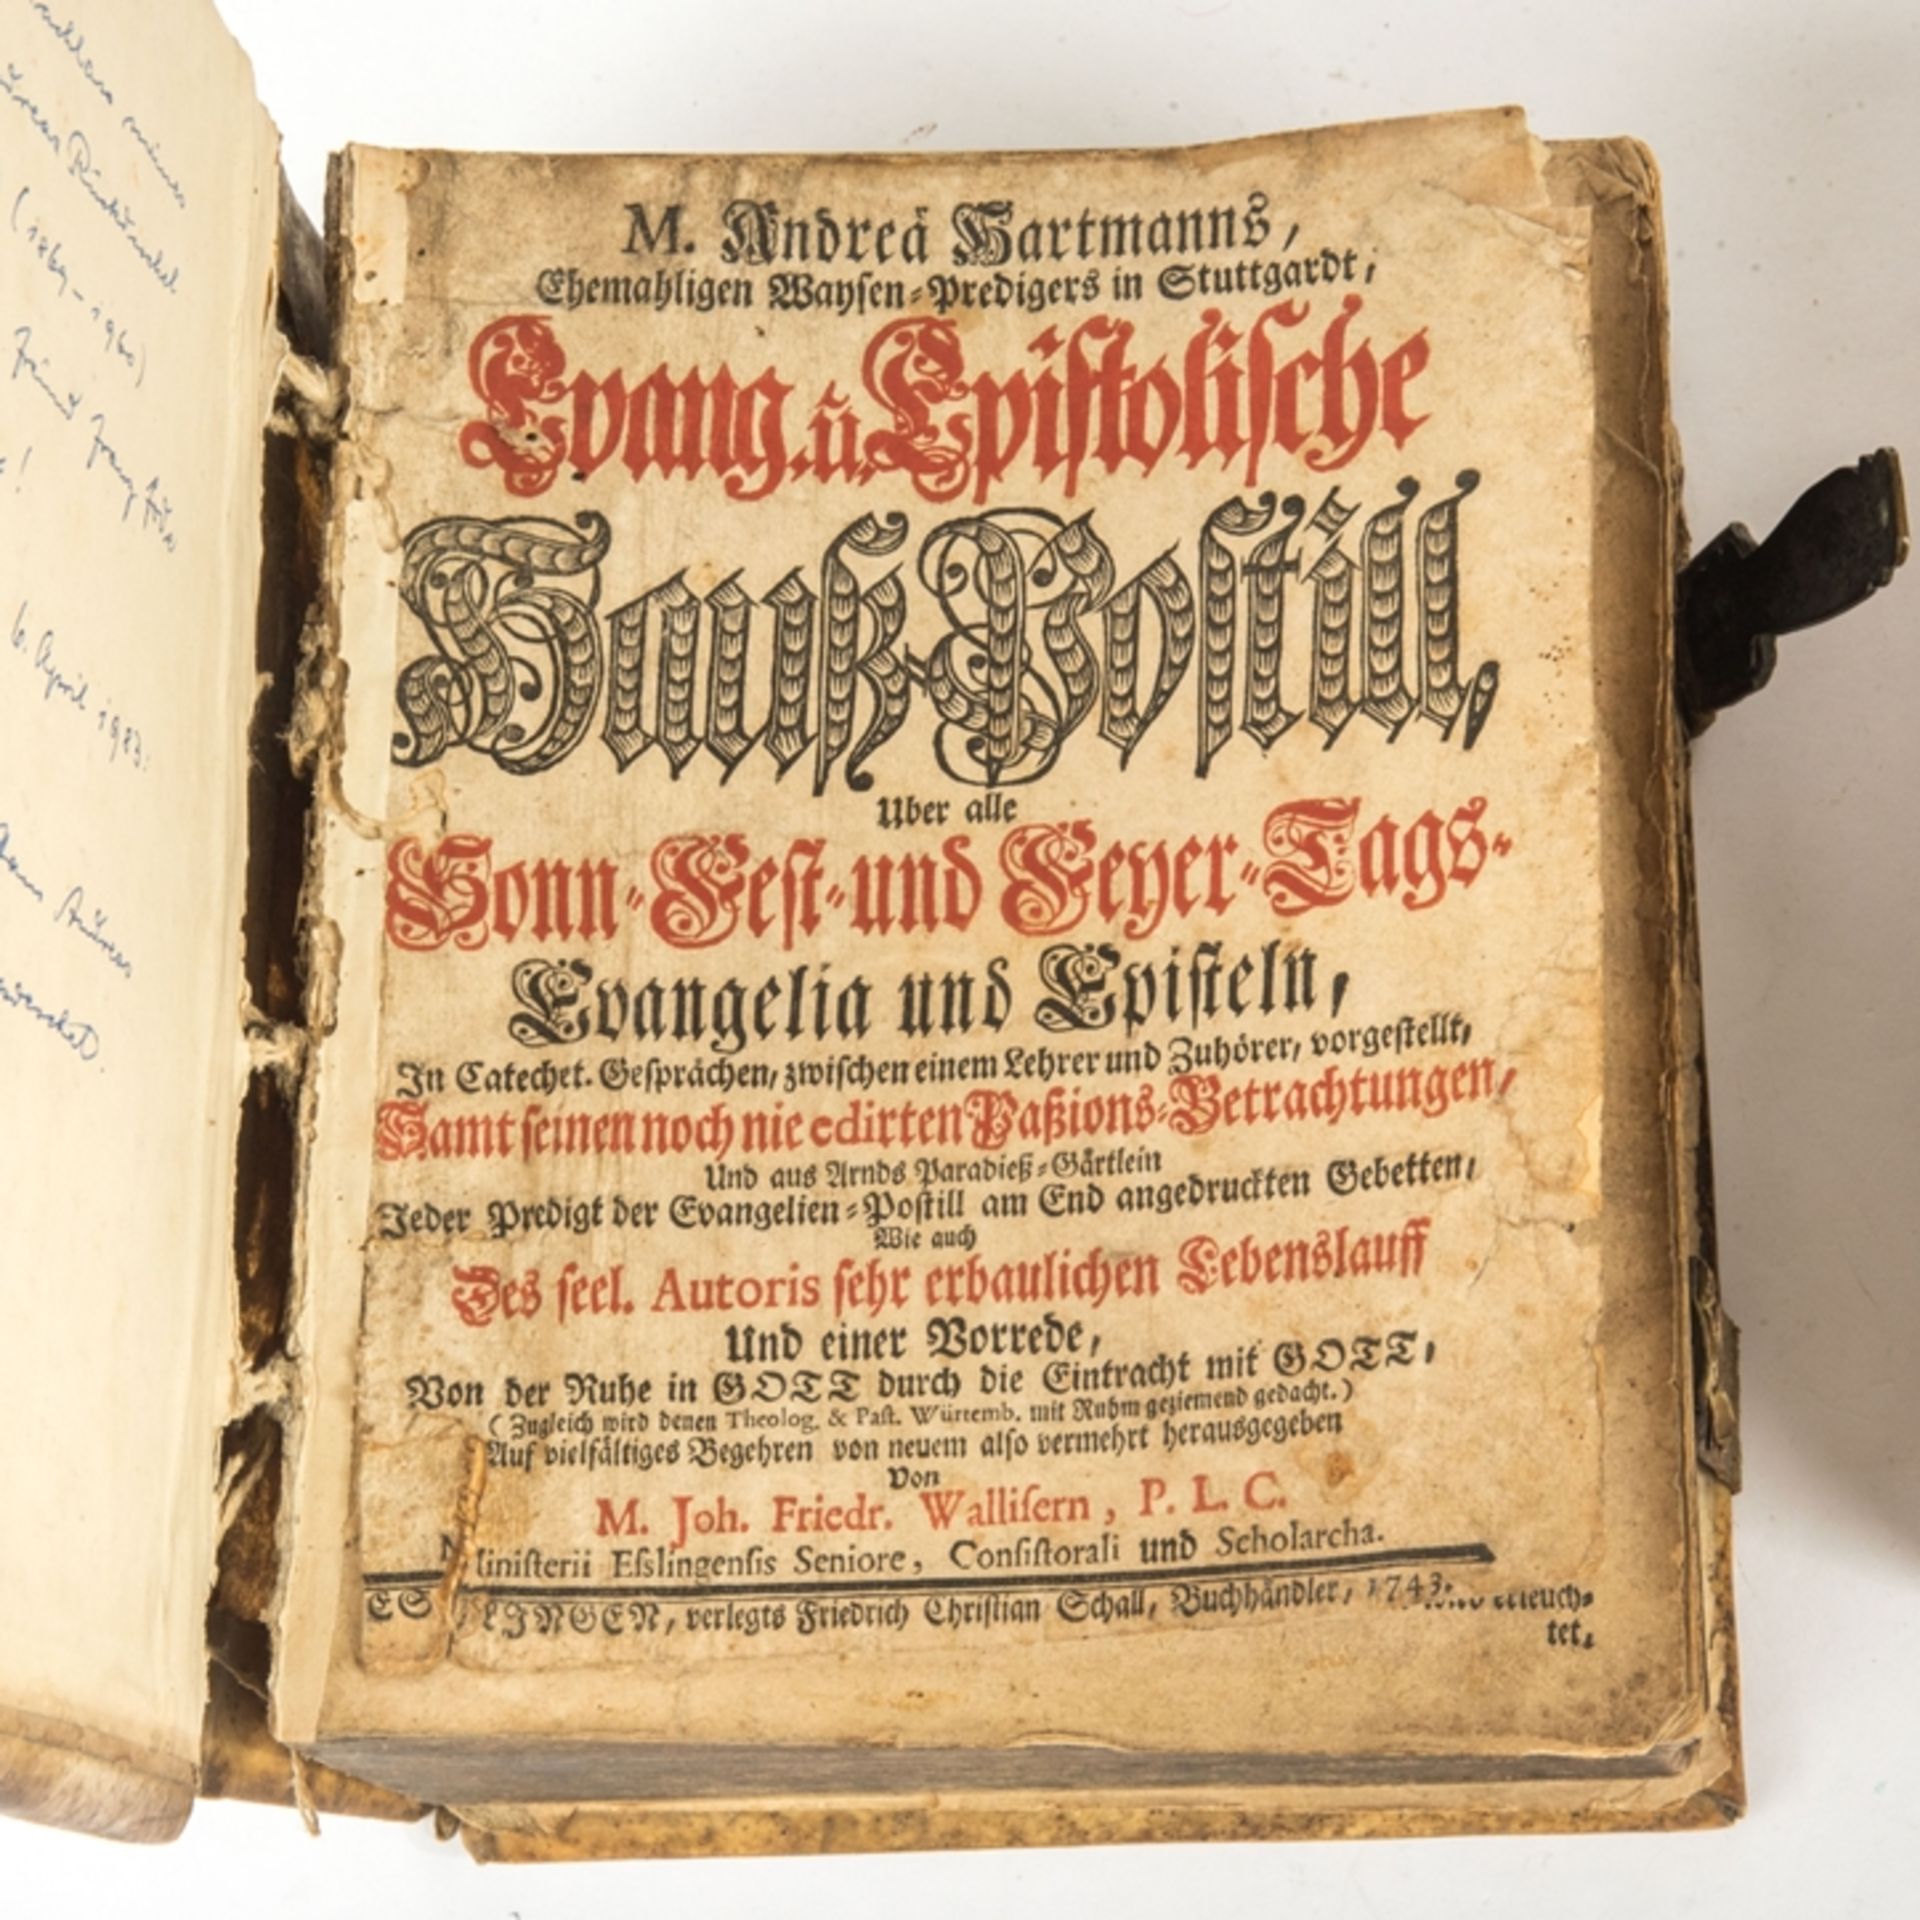 1 Bibel , mit Widmung dat. 1850 und eine evangelische Hauß-Postill. von 1743 - Image 2 of 4